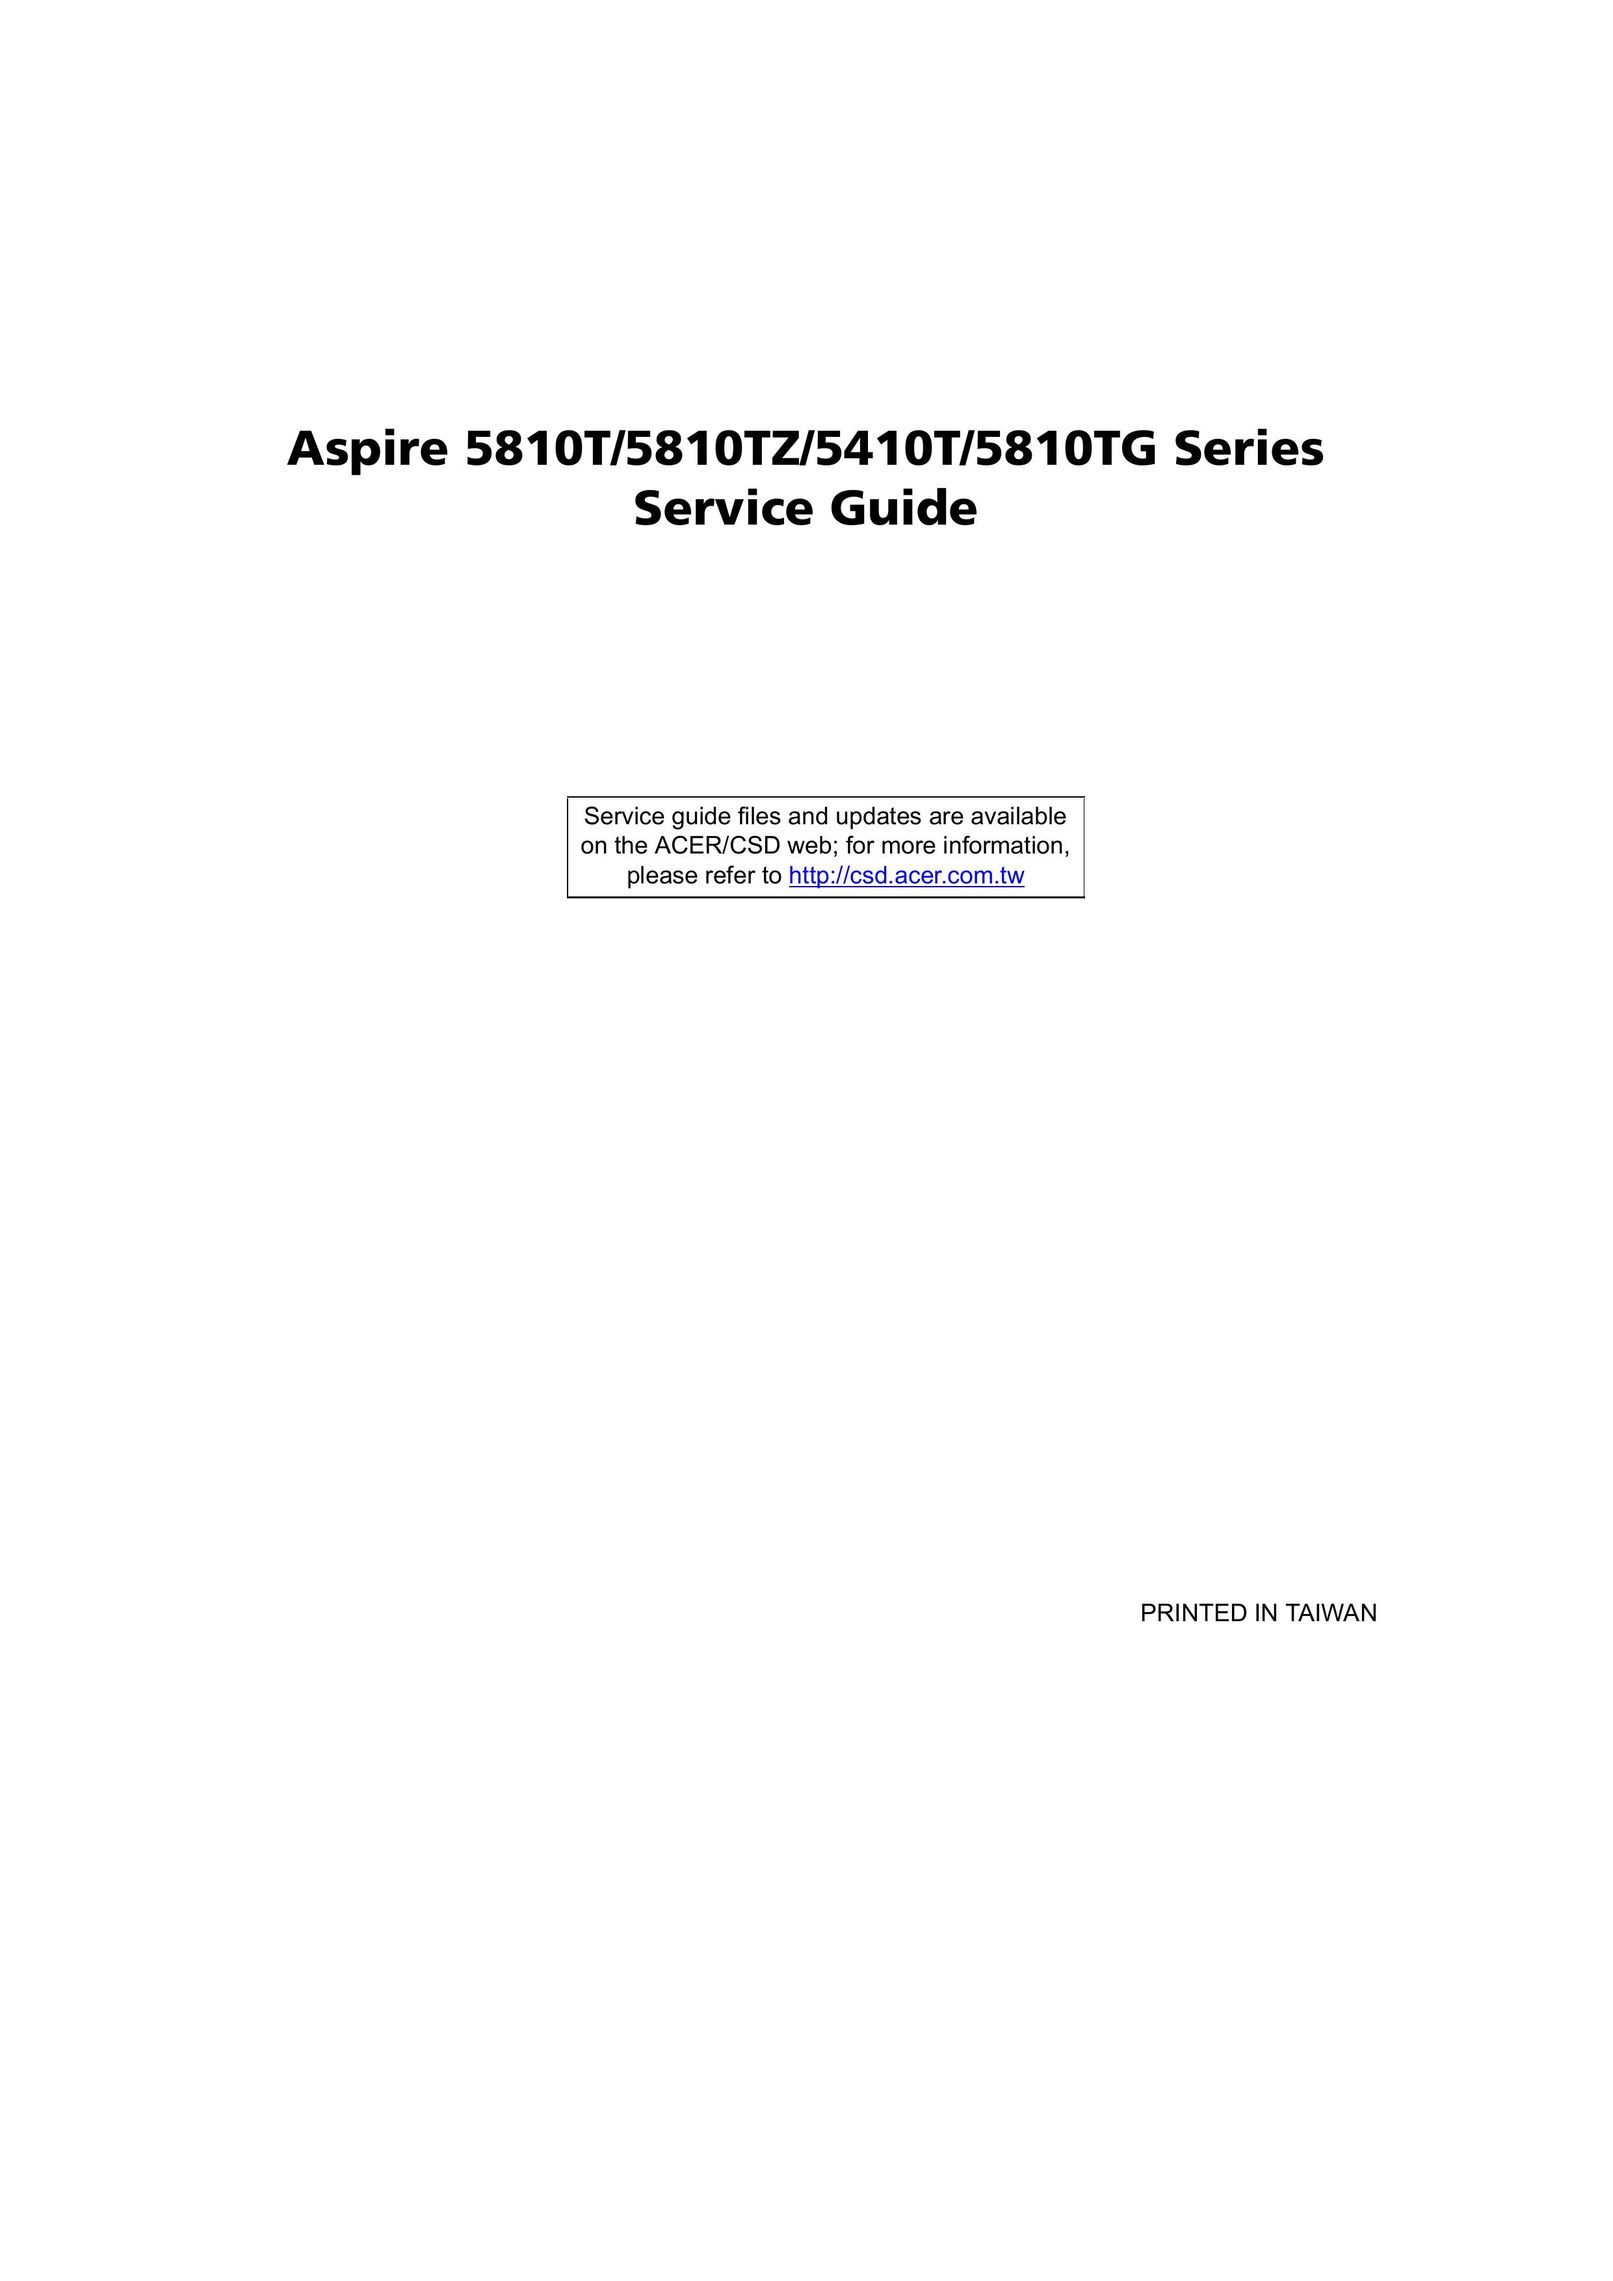 Aspire Digital 5810TG Laptop User Manual